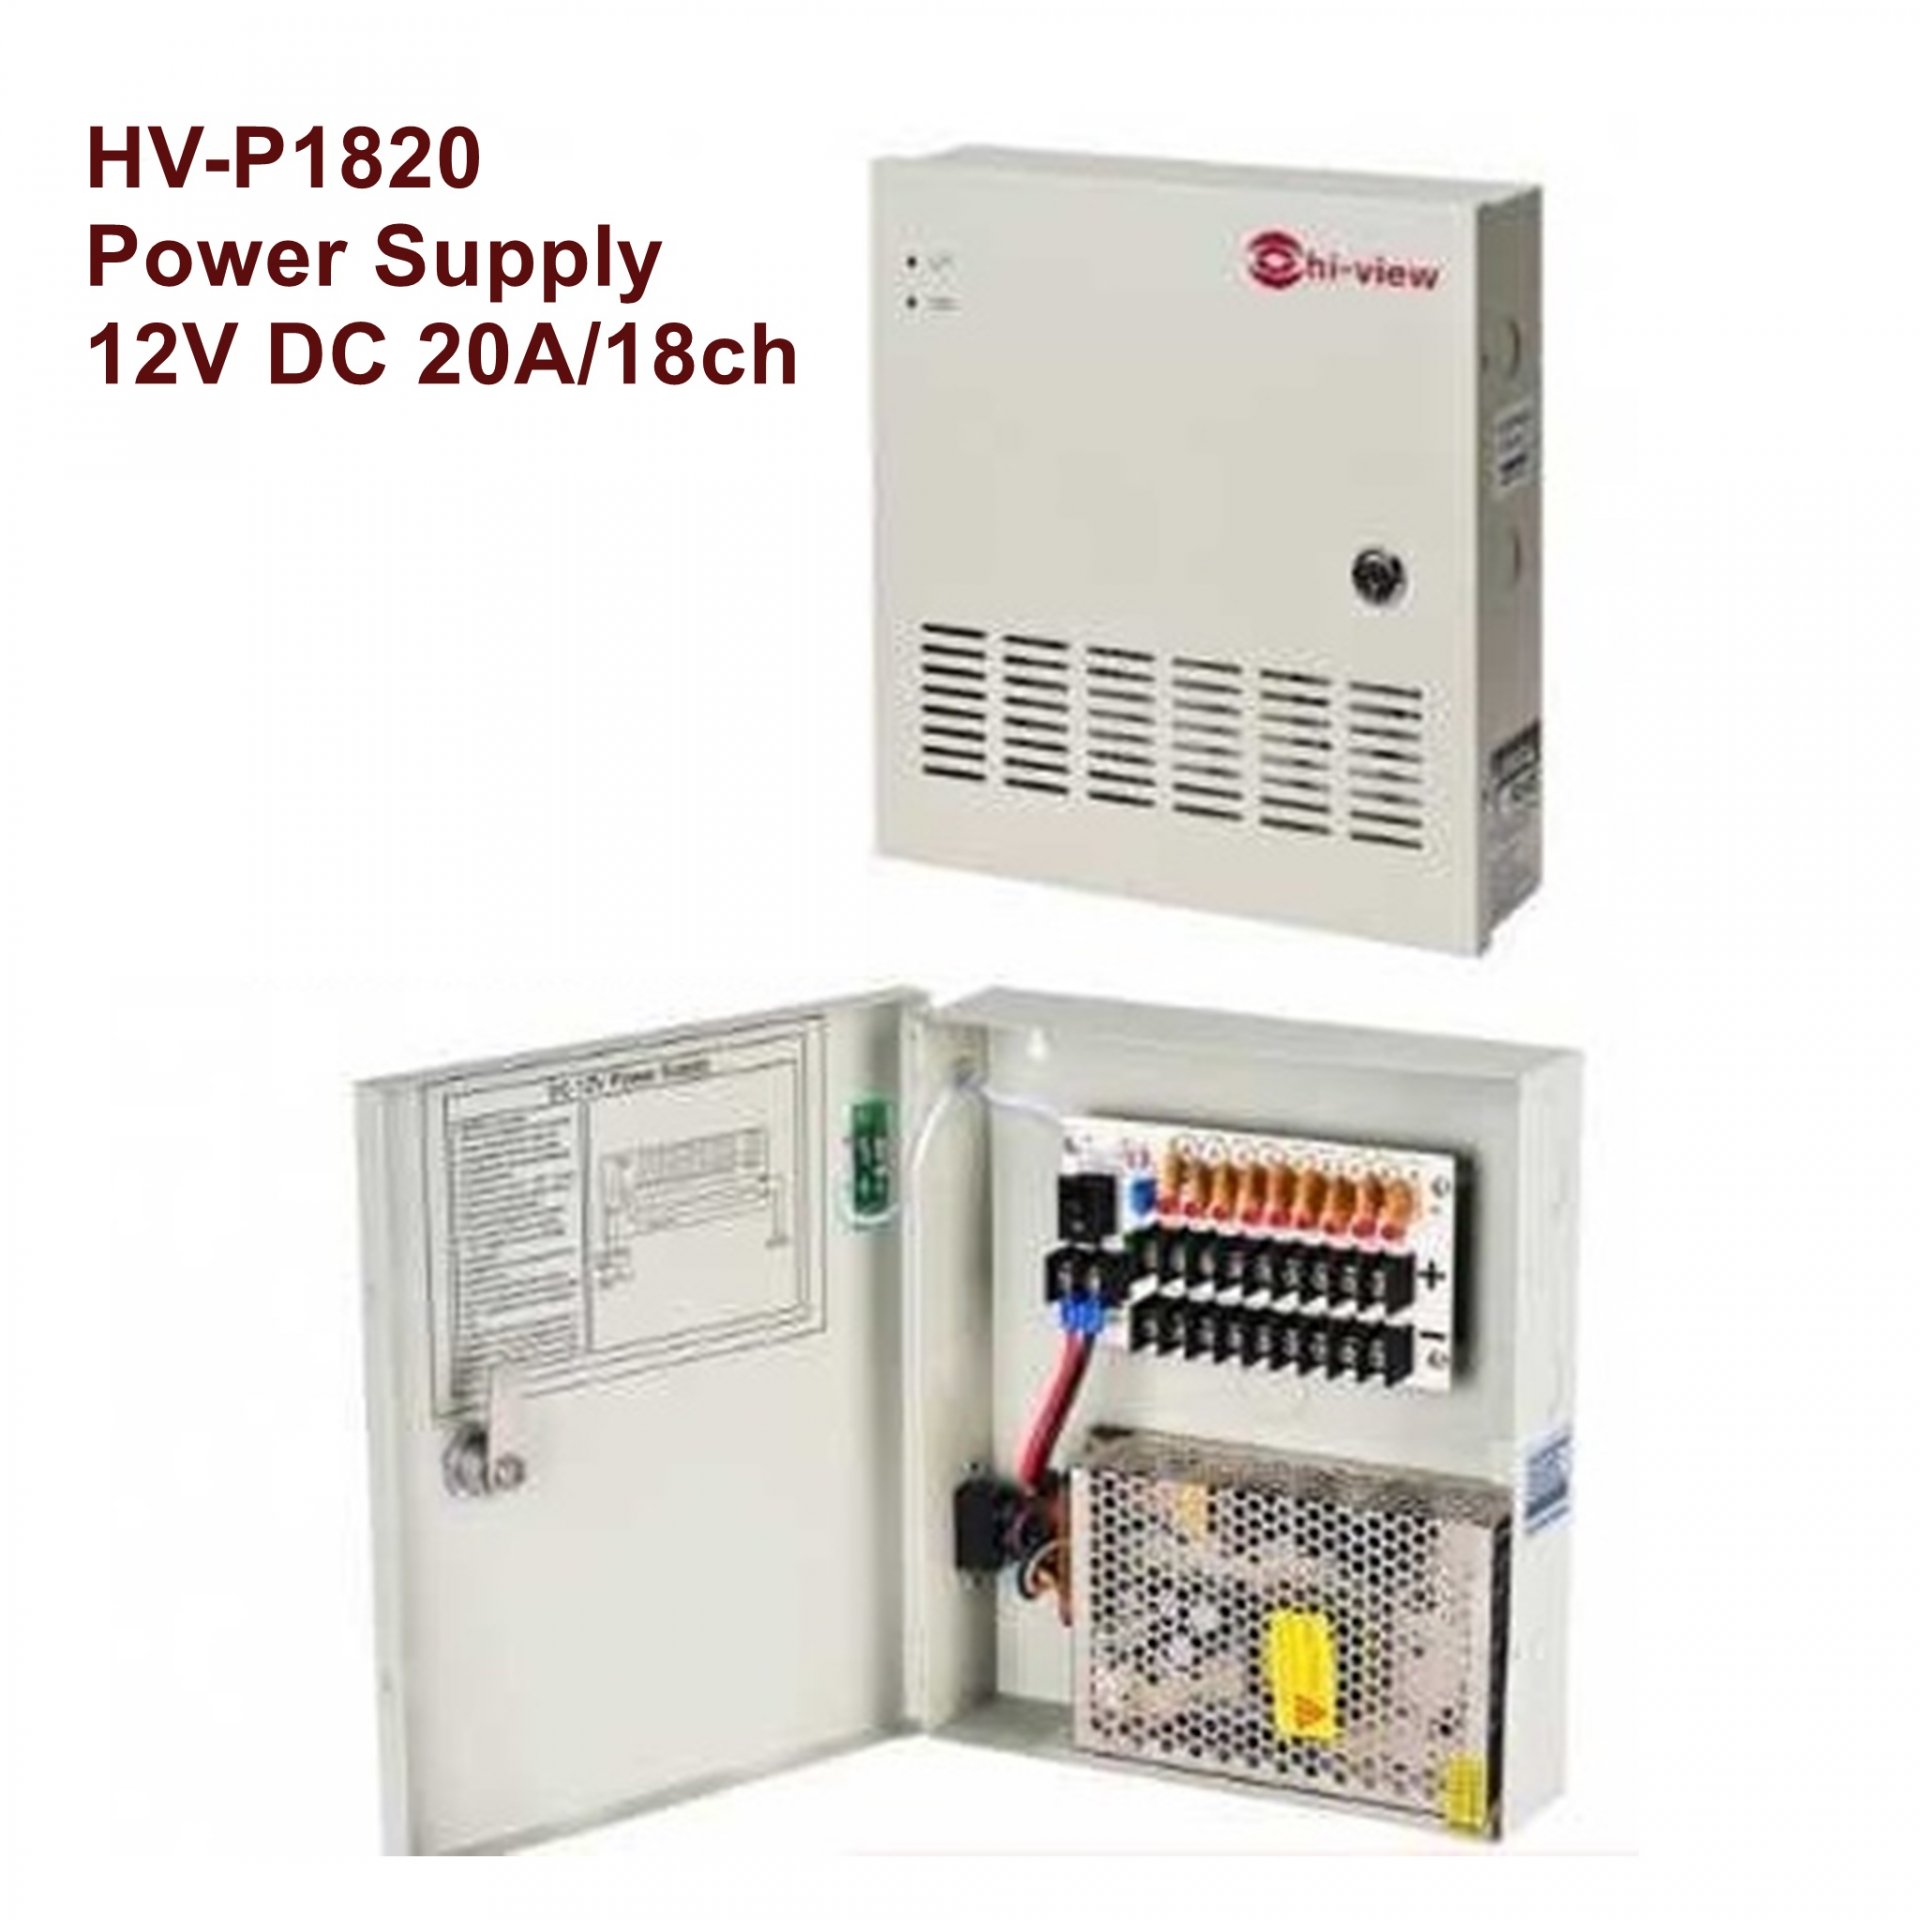 HV-P1820 Power Supply 12V DC 20A/18ch